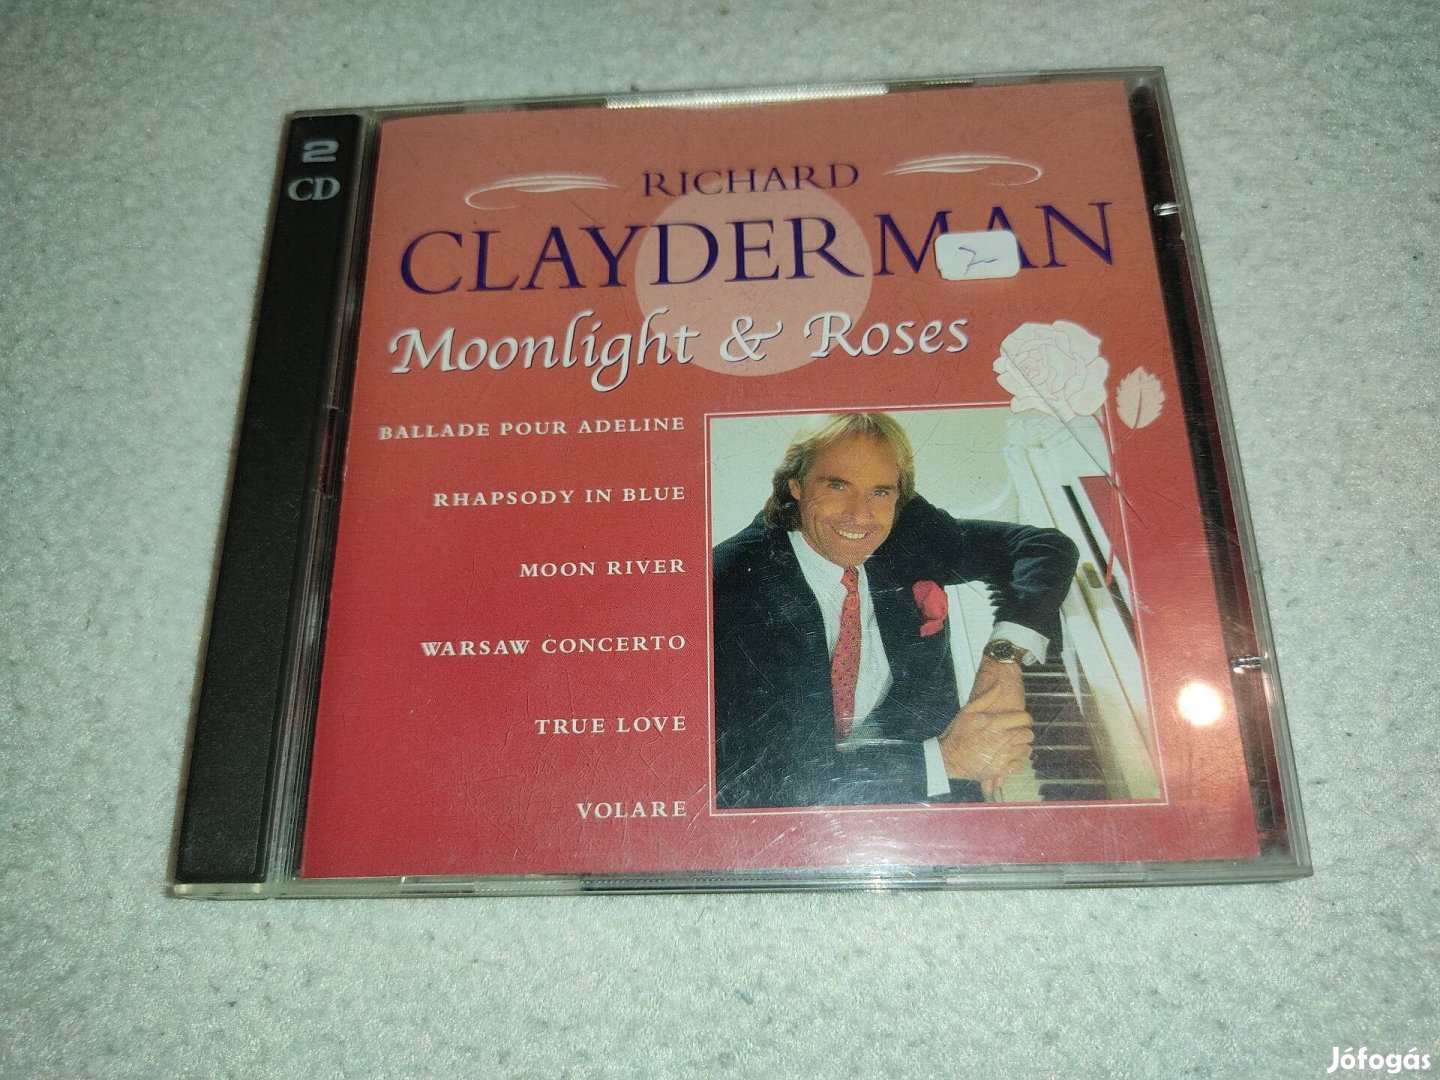 Richard Clayderman - Moonlight & Roses (2CD)